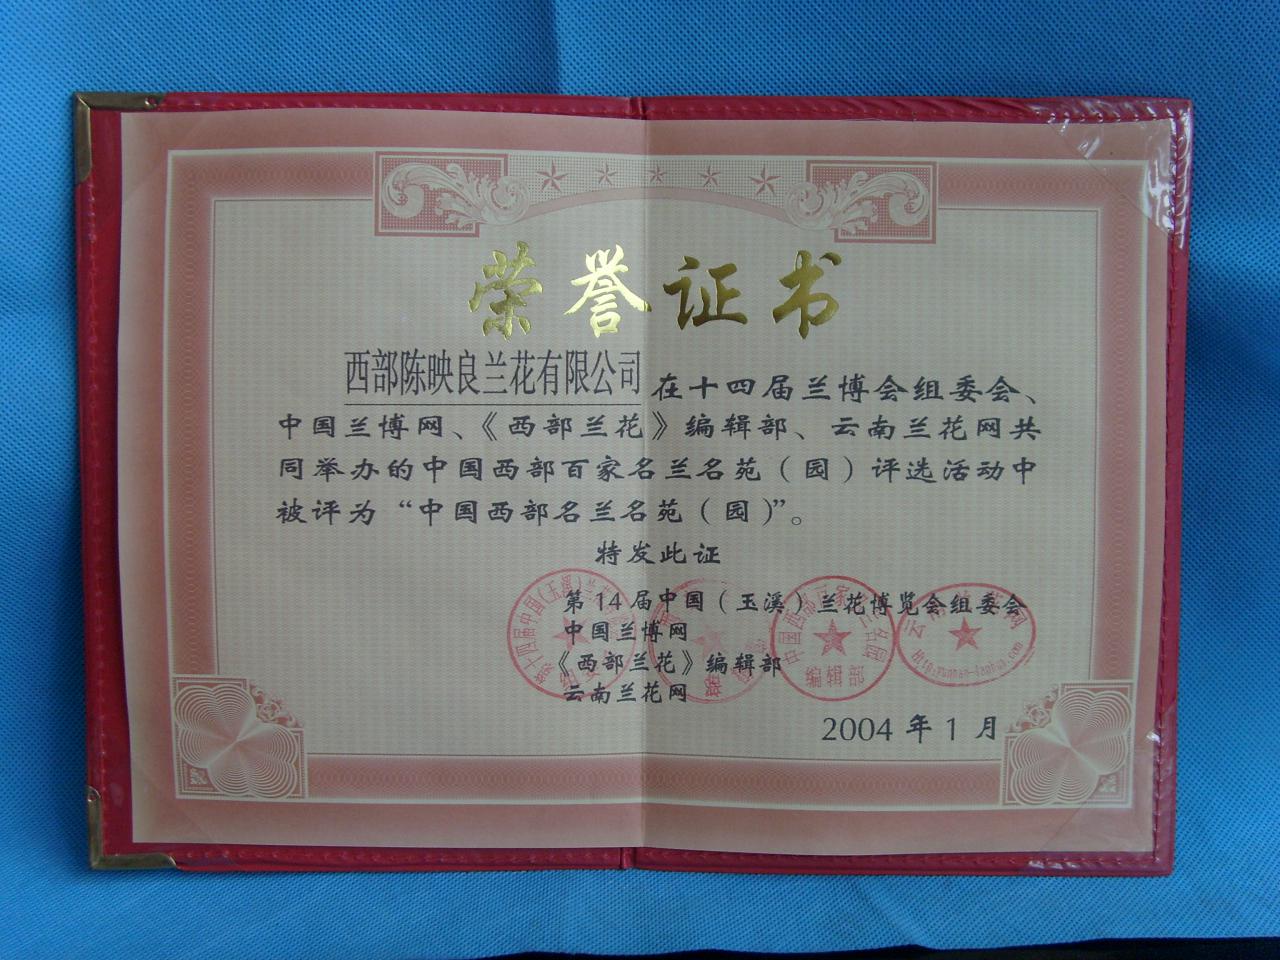 2004年中国第十四届兰博会获得“中国西部名兰名苑”荣誉证